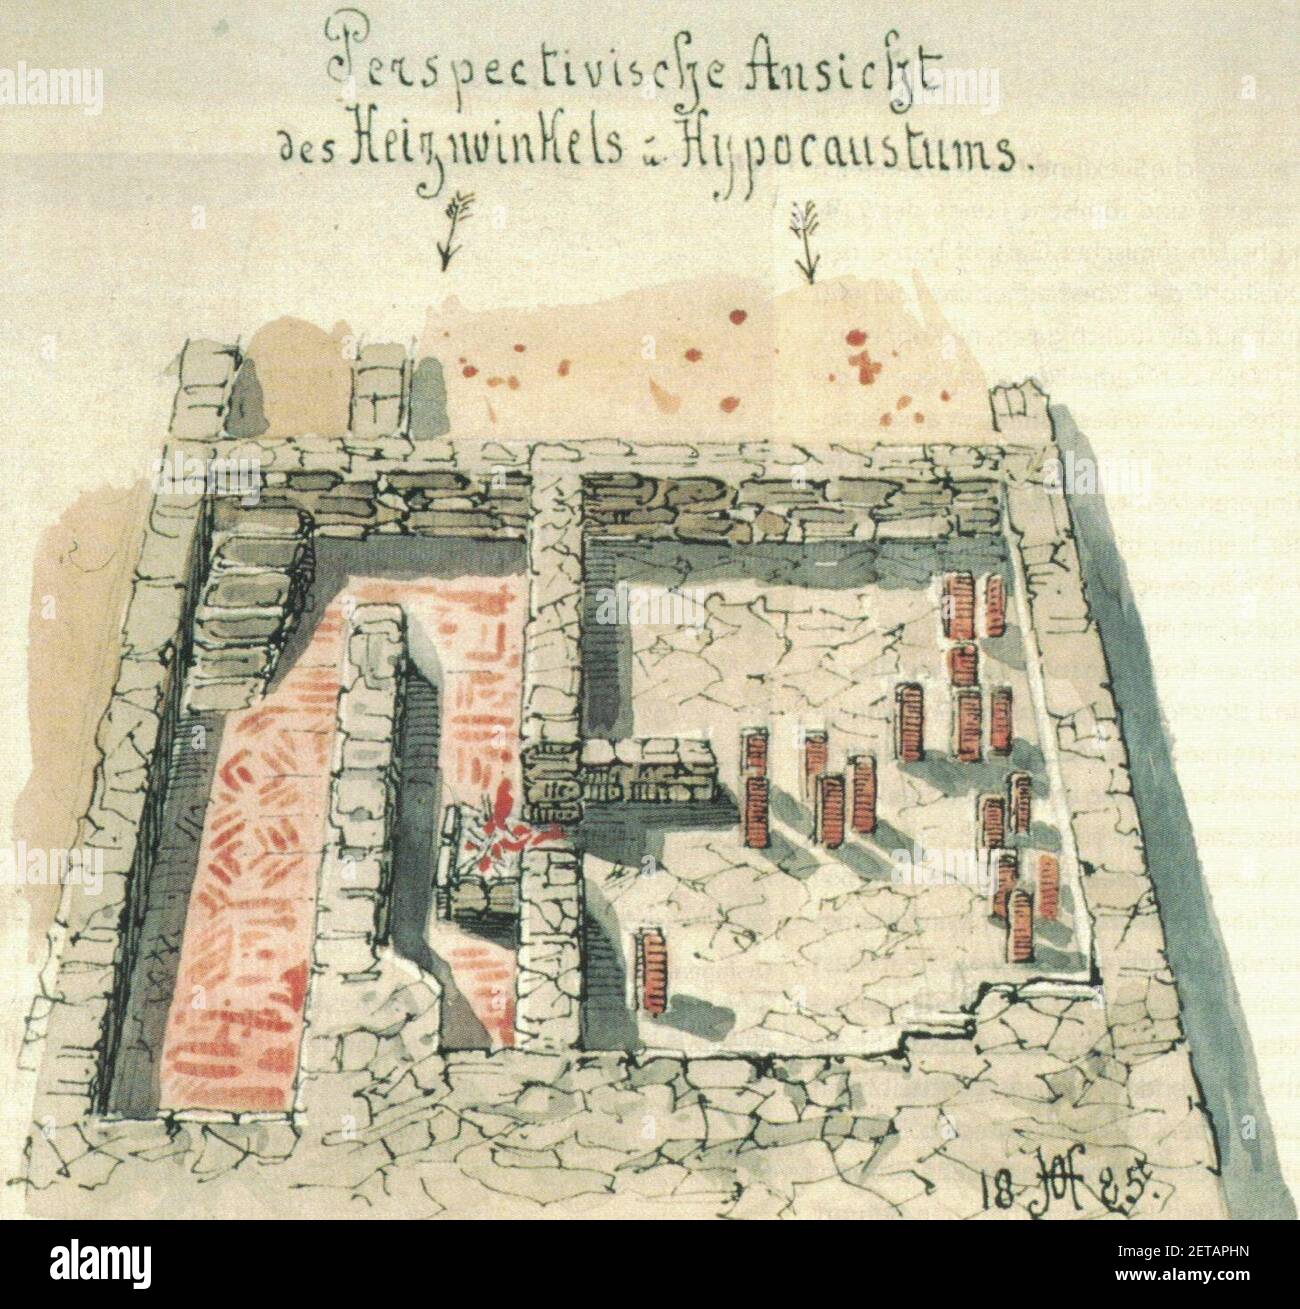 Perspektivische Ansicht des Heizwinkels und Hypocaustums bei einer Untersuchung römischer Ruinen in Rottweil 1885 durch Ausgräber Hölder. Stock Photo